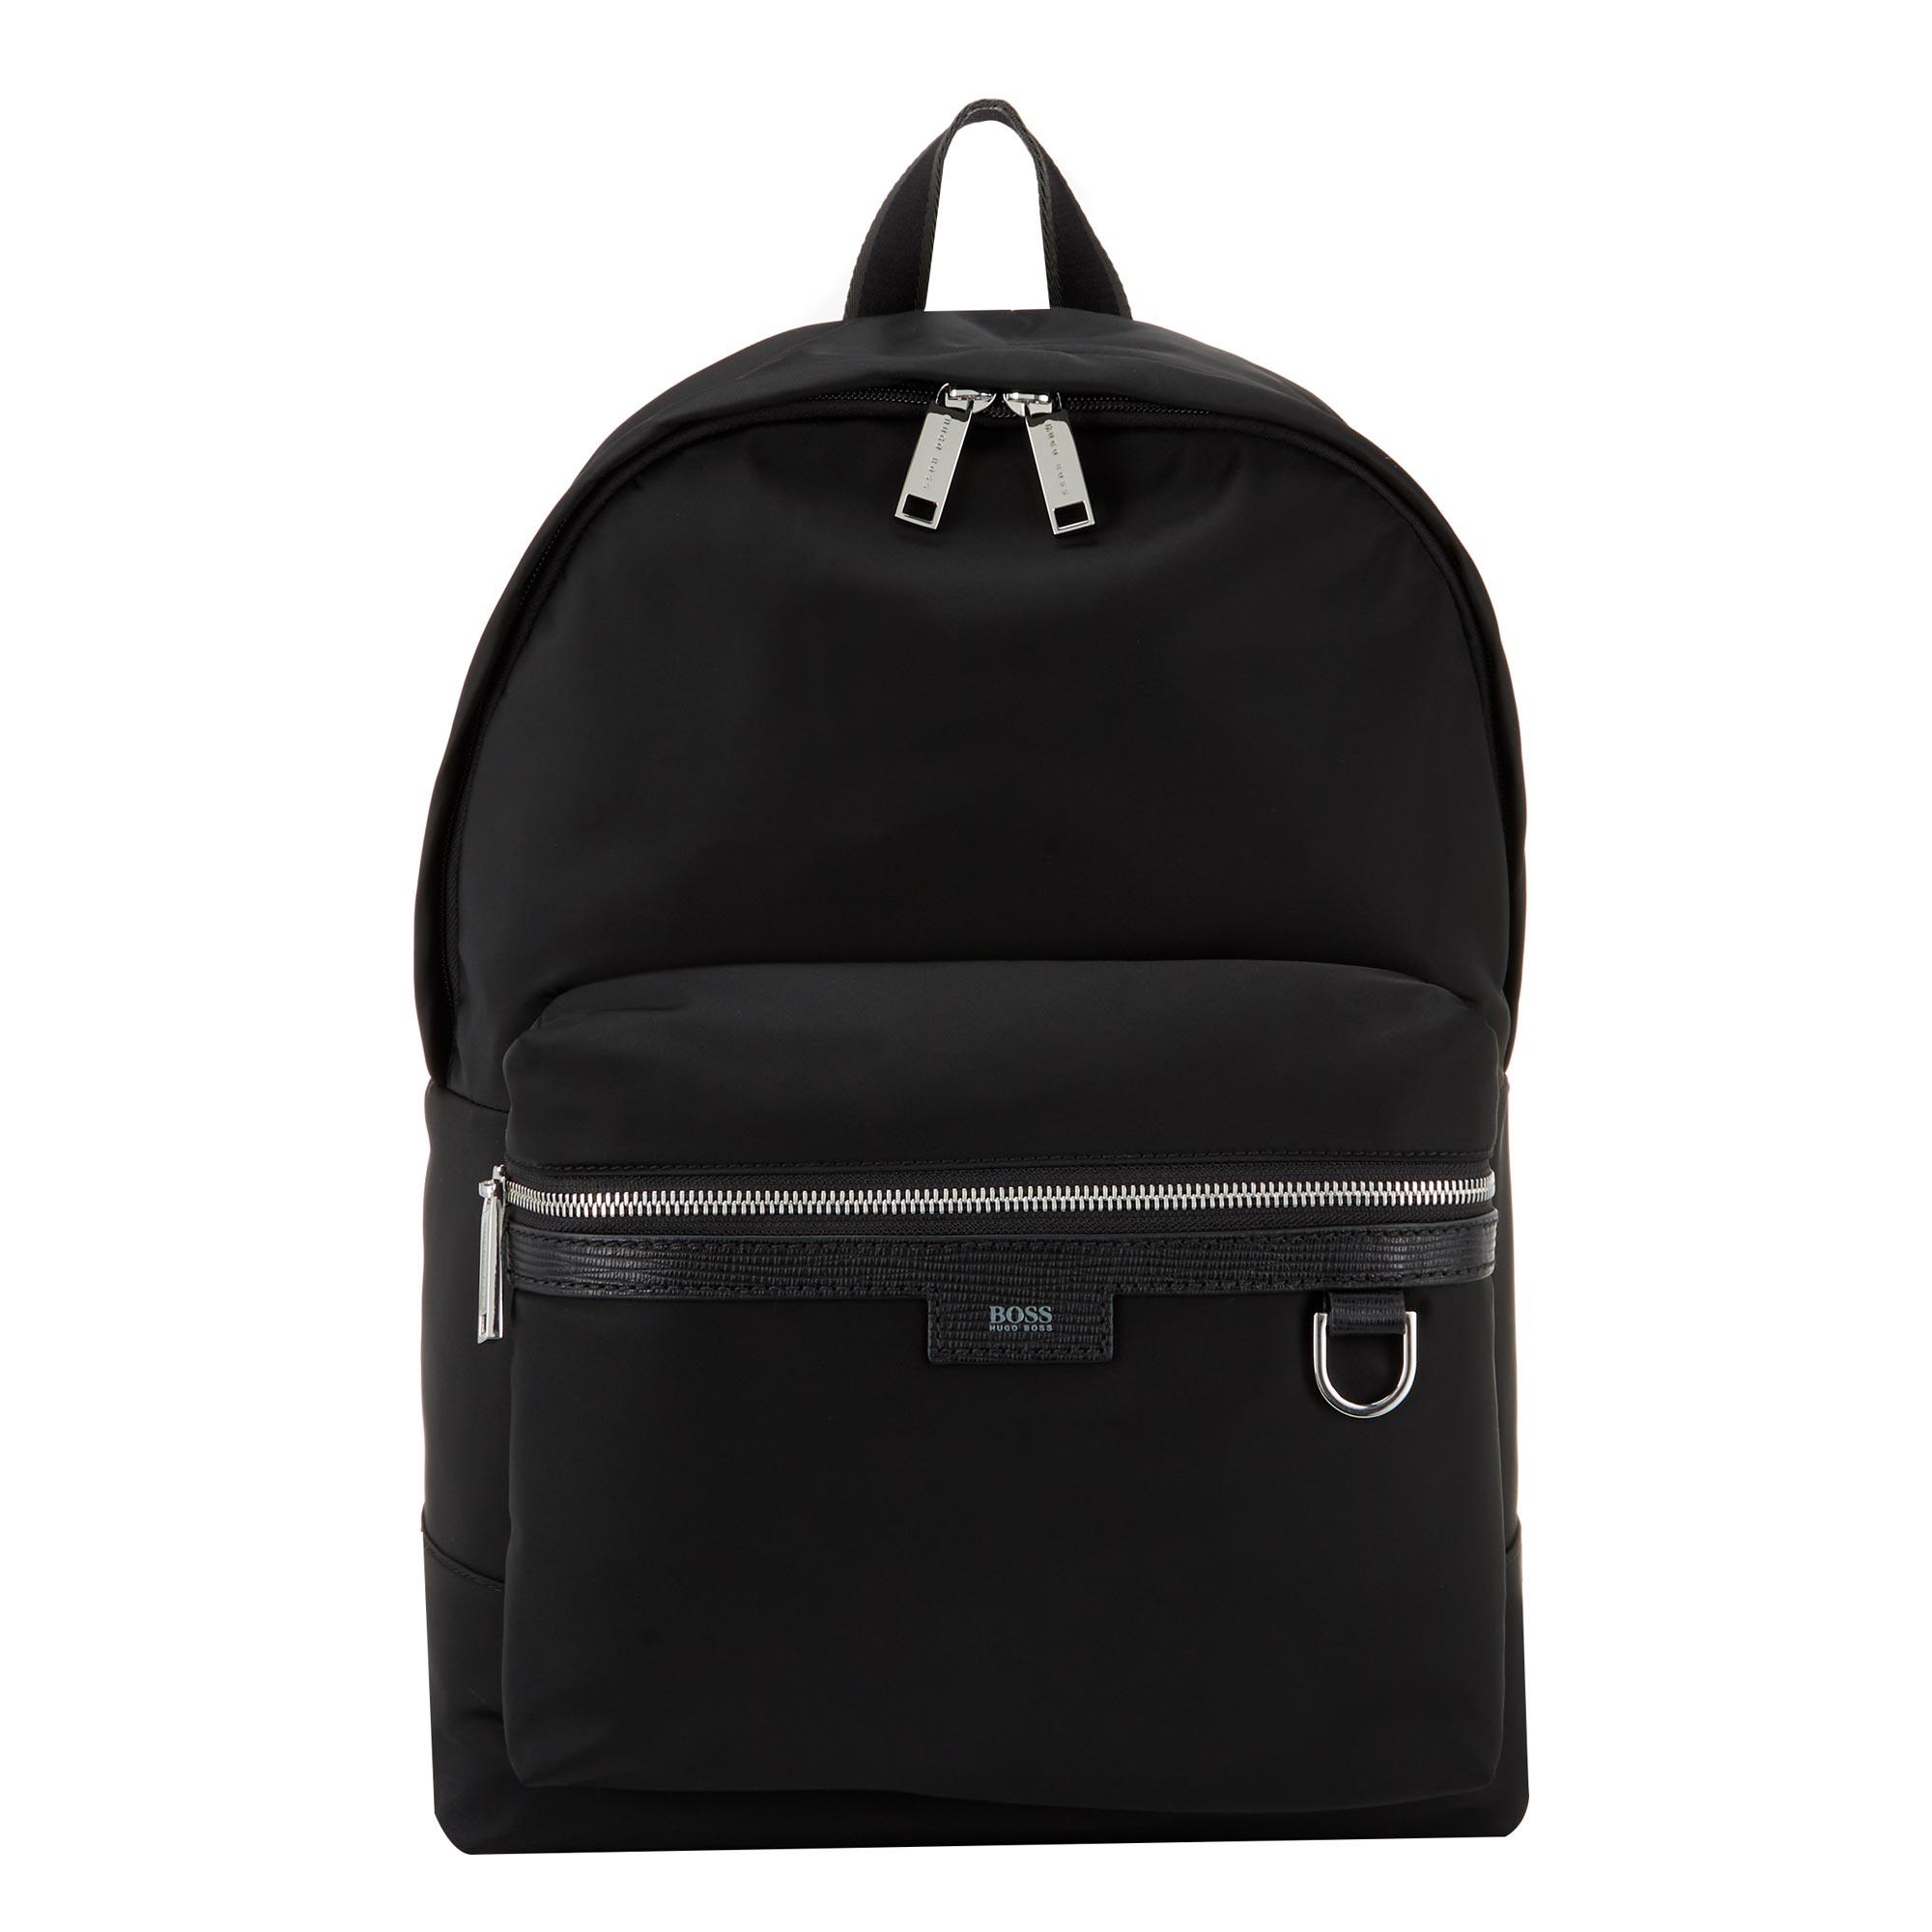 Meridian Backpack